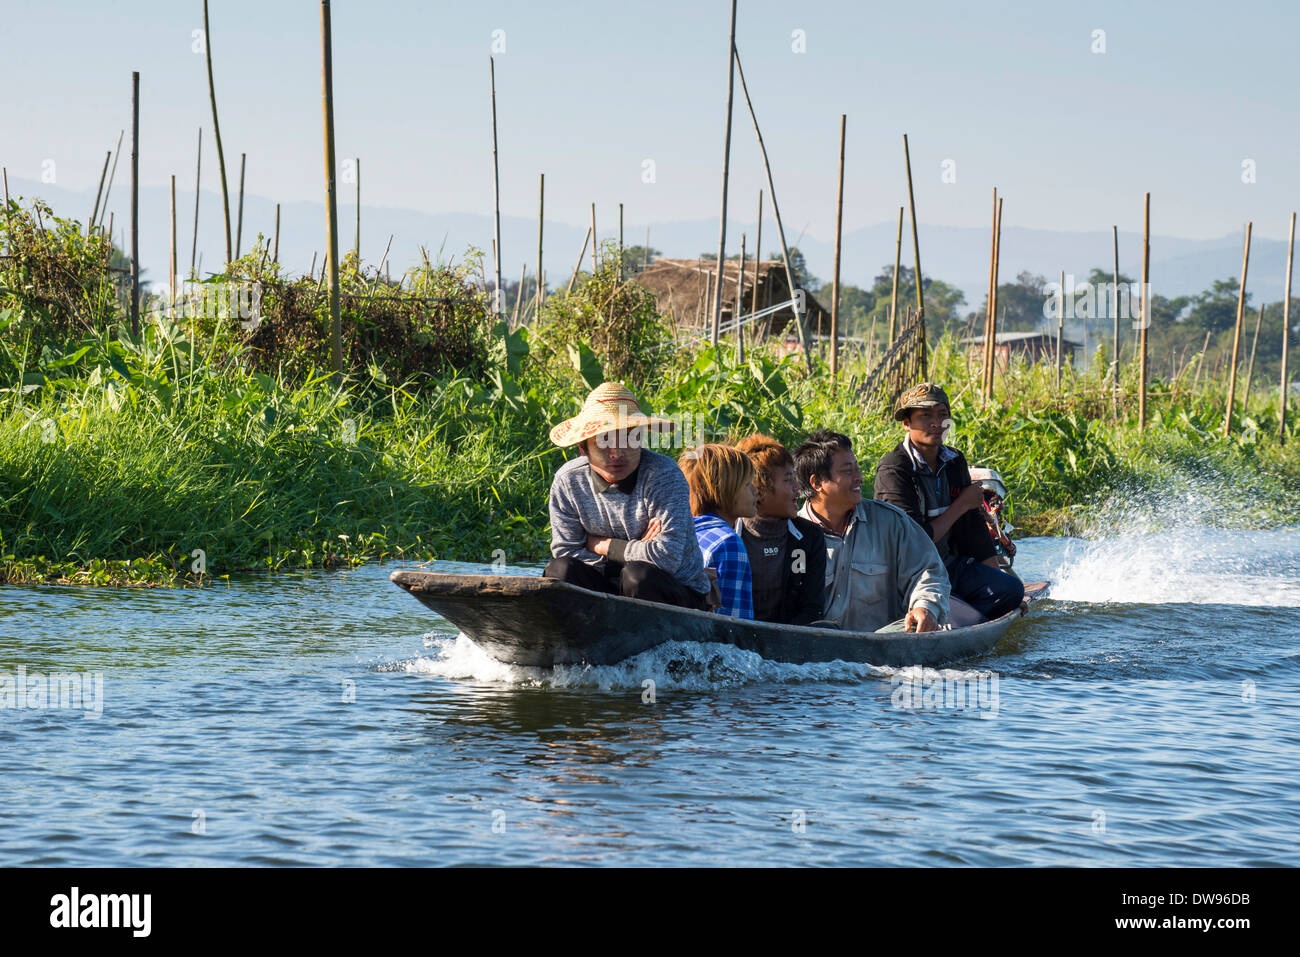 Personnes dans un canot, champ, jardin flottant sur l'eau, lac Inle, l'État de Shan, Myanmar Banque D'Images